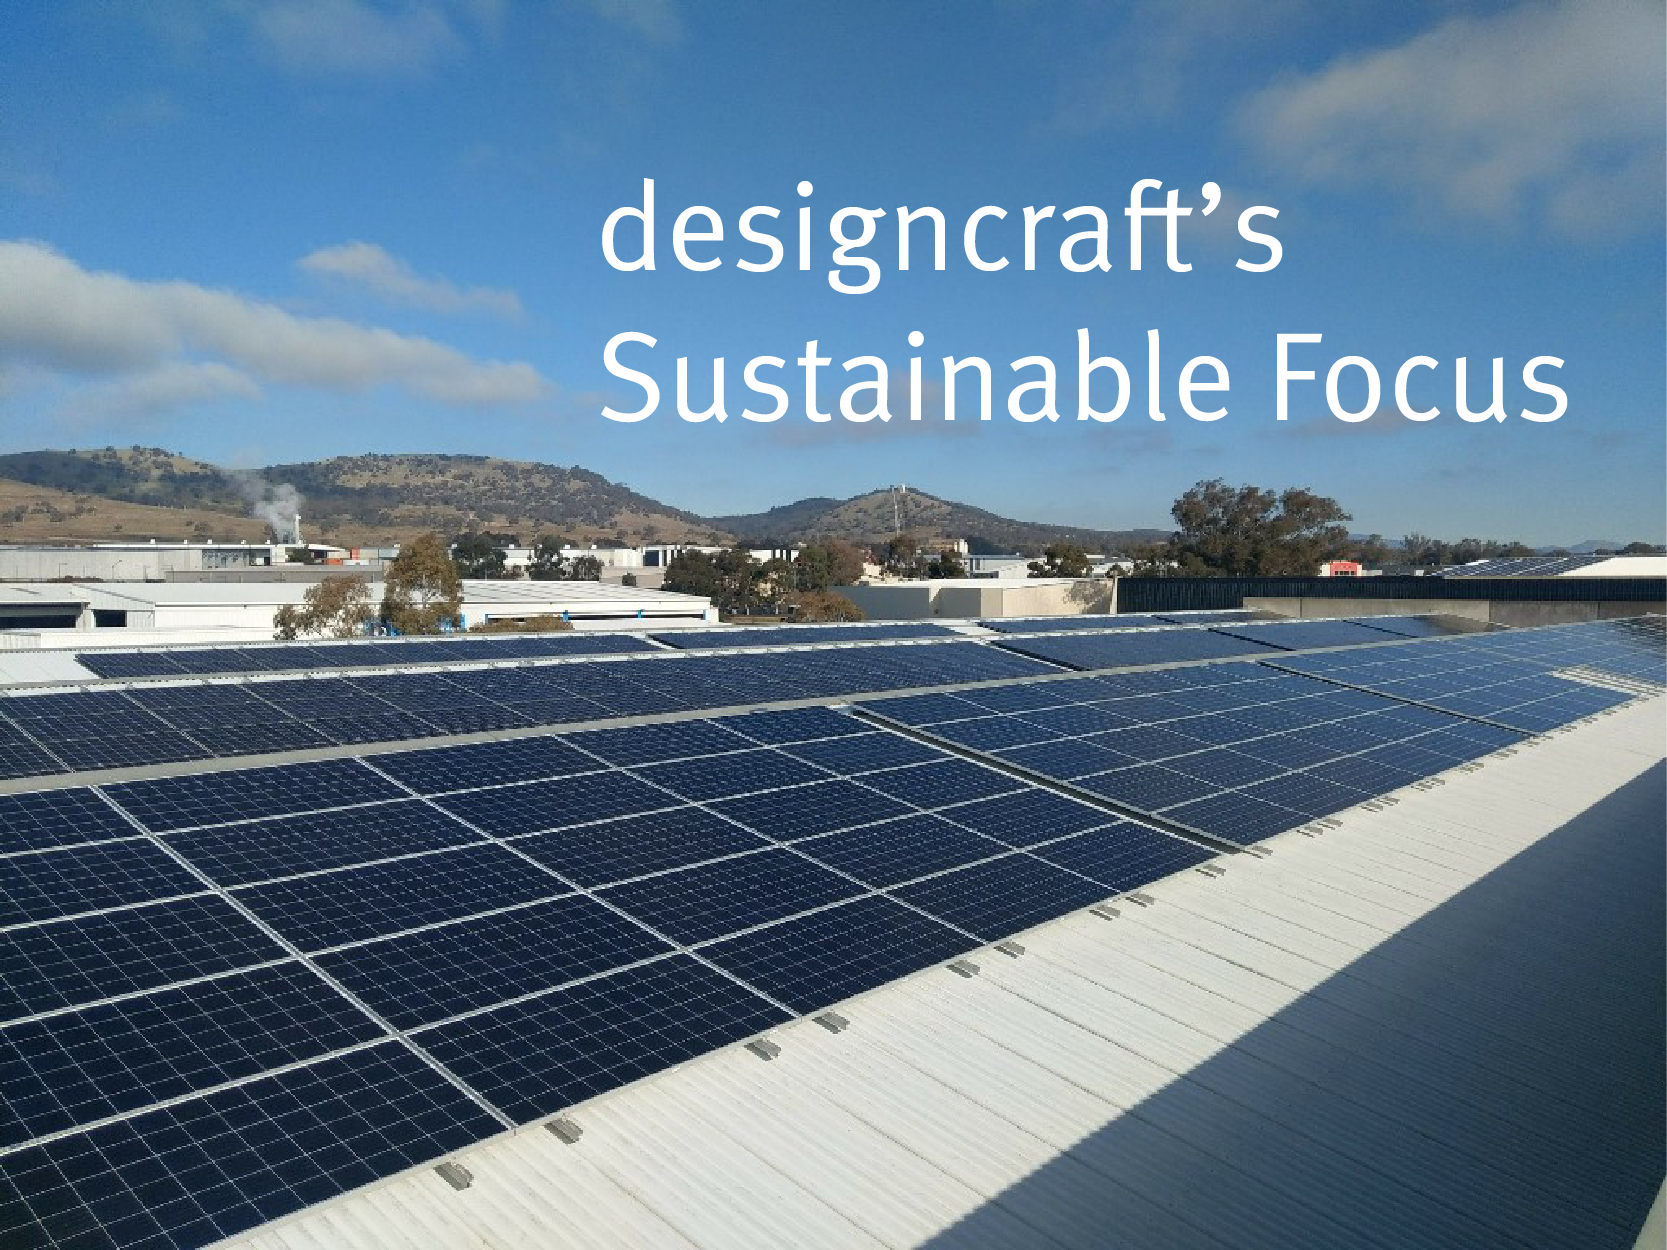 designcraft solar panels, designcraft sustainable furniture supplier